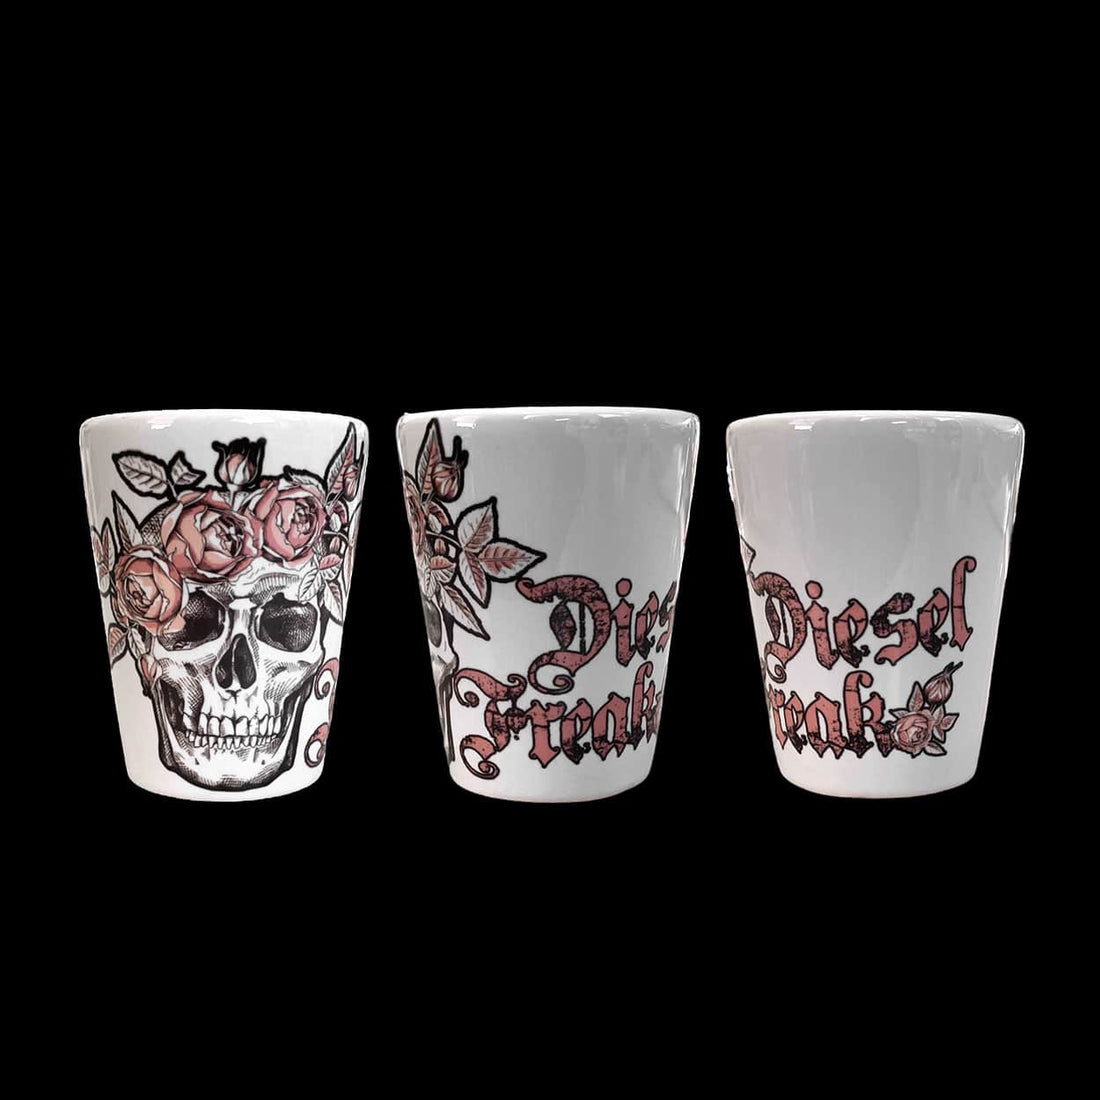 Skull and roses white ceramic shot glass - Diesel Freak